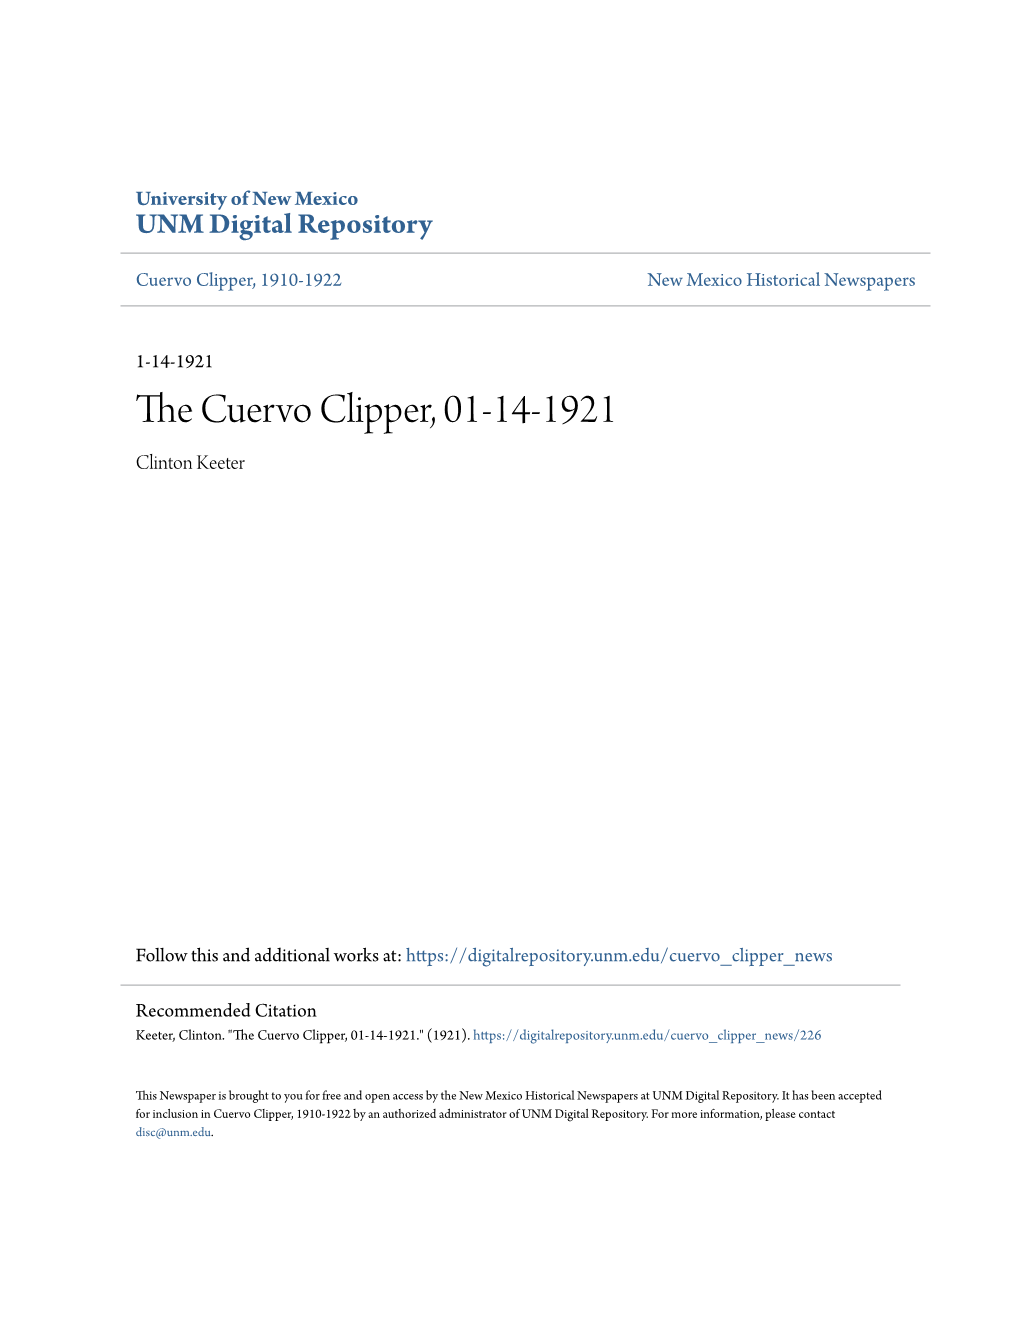 The Cuervo Clipper, 01-14-1921